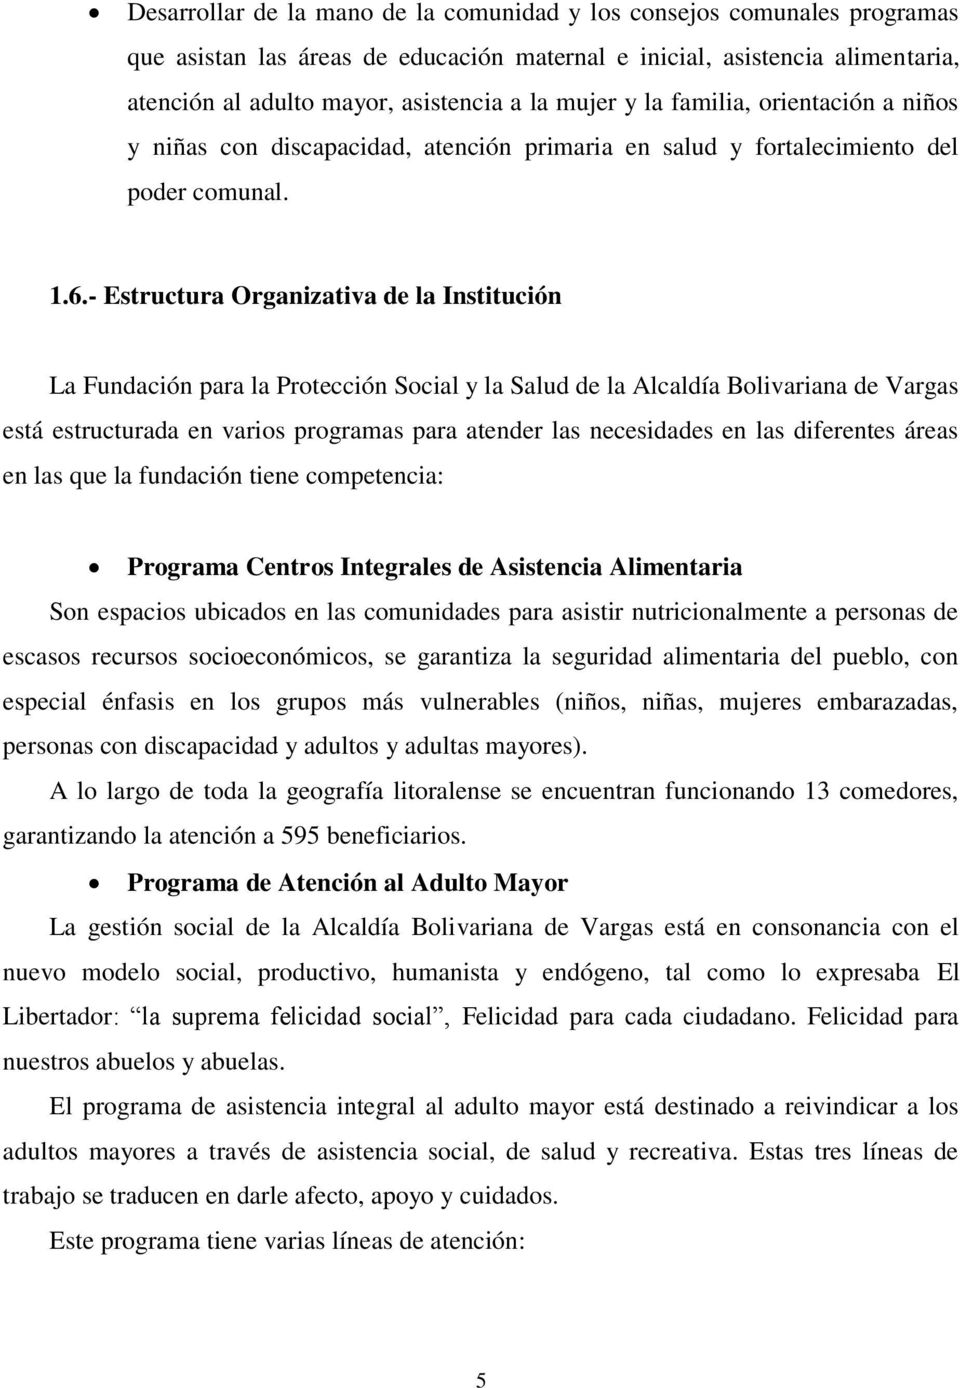 - Estructura Organizativa de la Institución La Fundación para la Protección Social y la Salud de la Alcaldía Bolivariana de Vargas está estructurada en varios programas para atender las necesidades